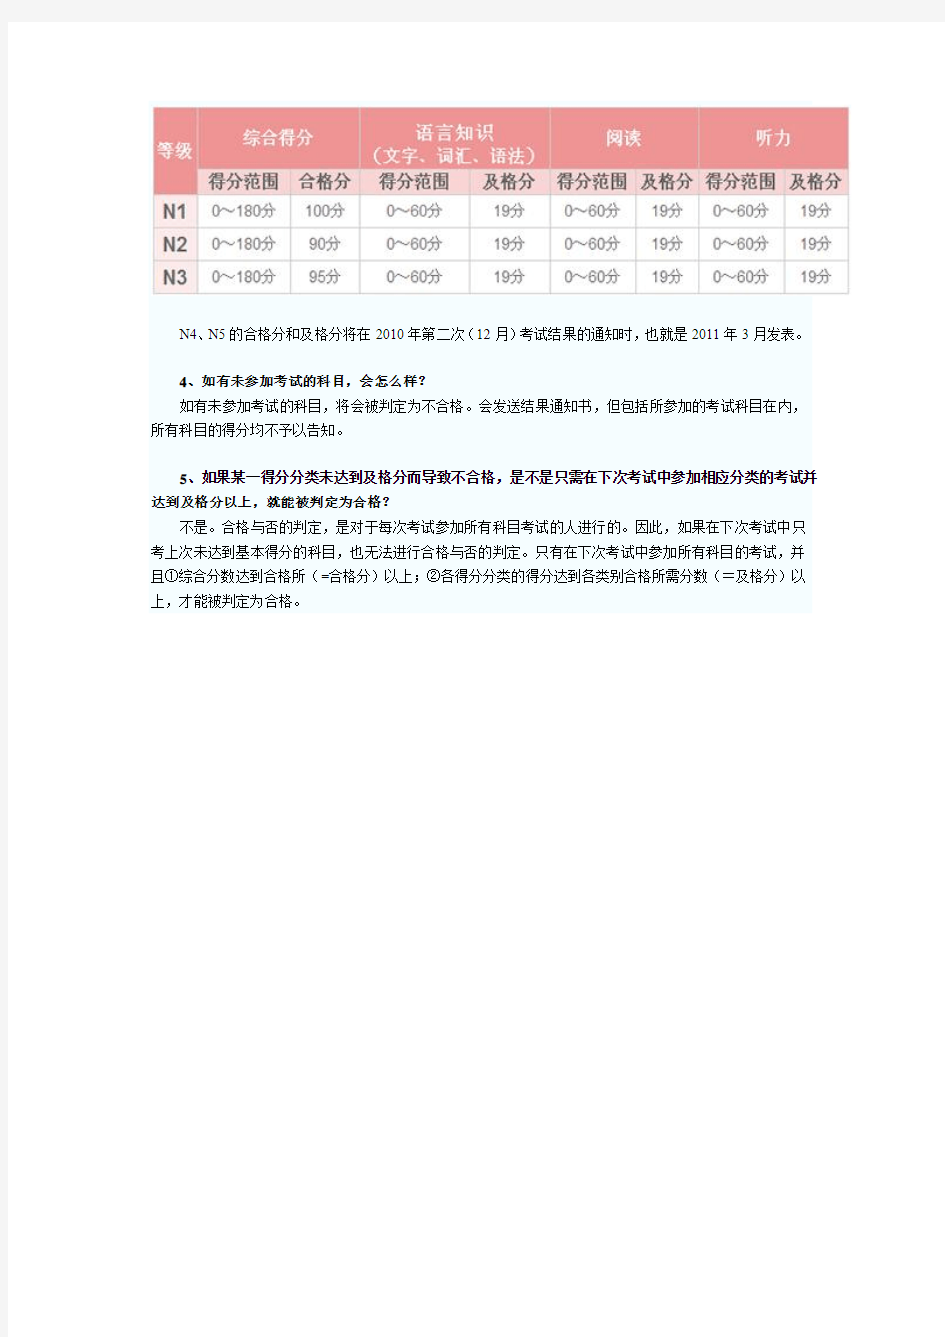 日语等级考试合格标准